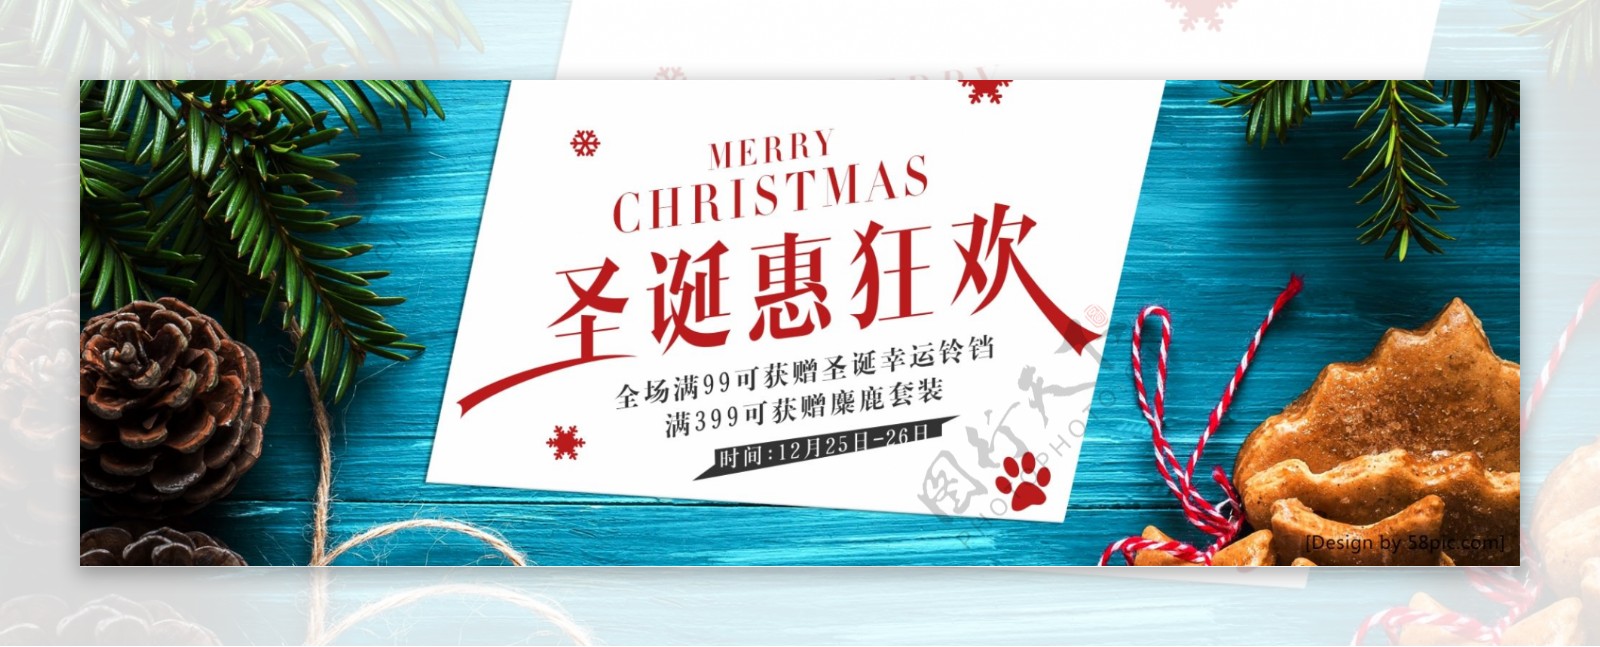 蓝绿时尚圣诞惠狂欢圣诞节电商banner